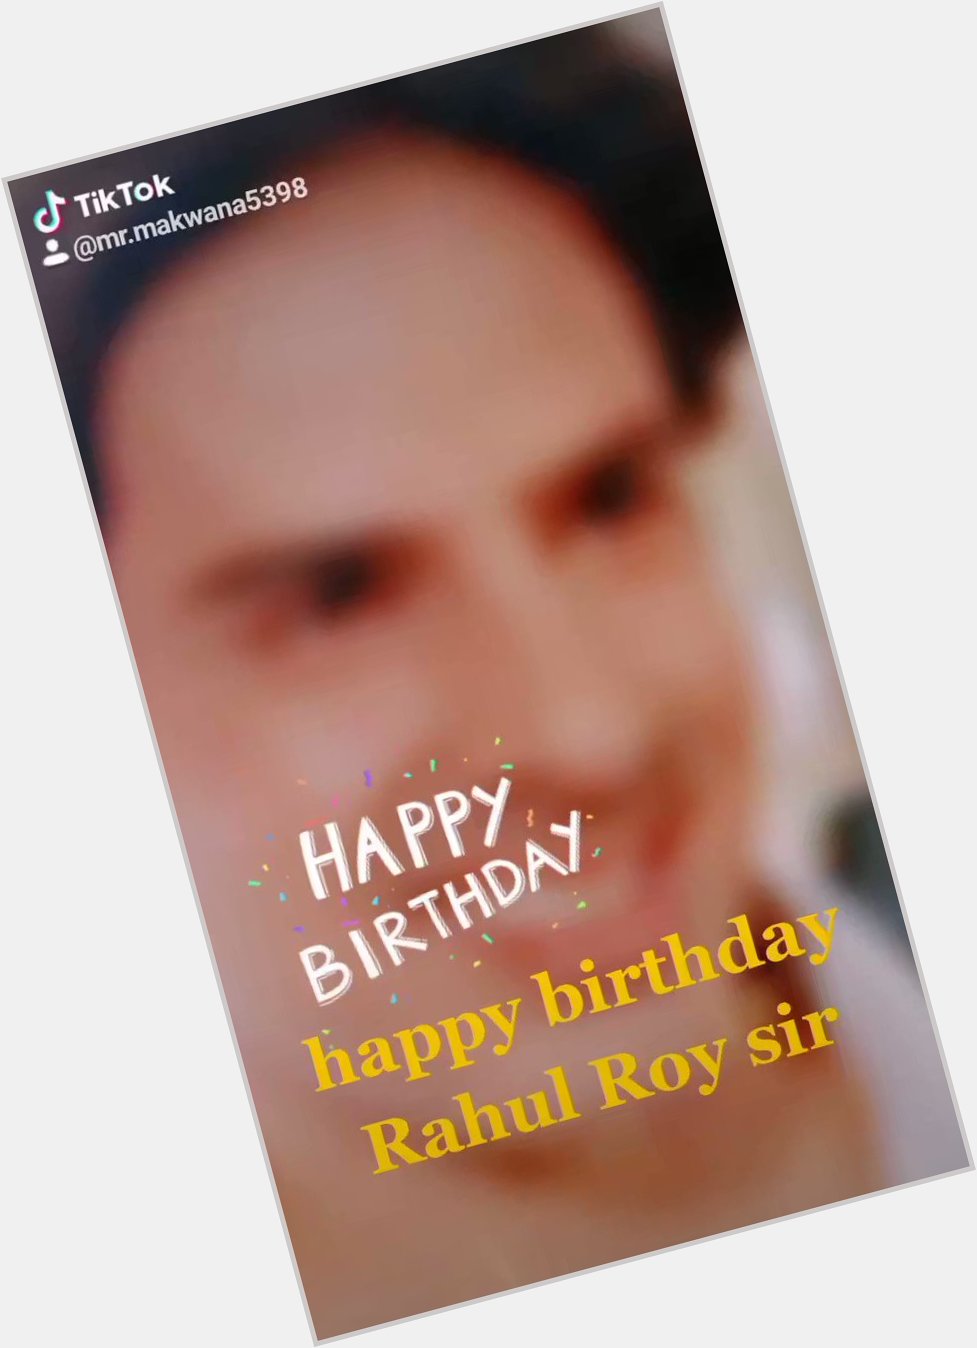  happy birthday Rahul Roy sir 